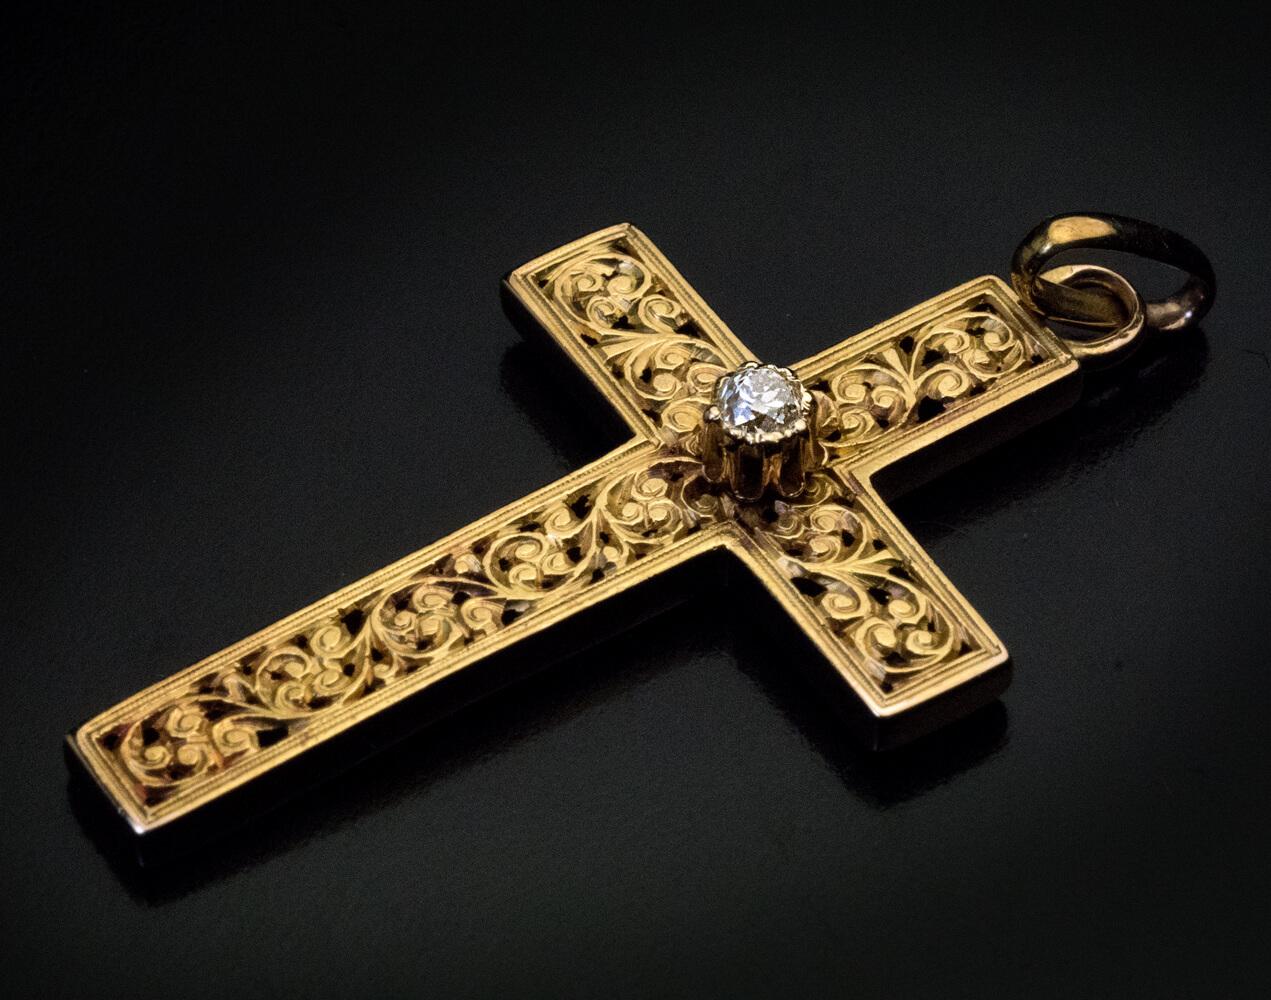 CIRCA 1880

Das 14K Gold Kreuz ist fein geschnitzt mit einem mittelalterlichen Stil Scrollen floralen Design und zentriert mit einem funkelnden alten Mine geschnitten Diamant (ca. 0,10 ct)

Die Gesamtlänge des Kreuzes mit Aufhängering beträgt 40 mm